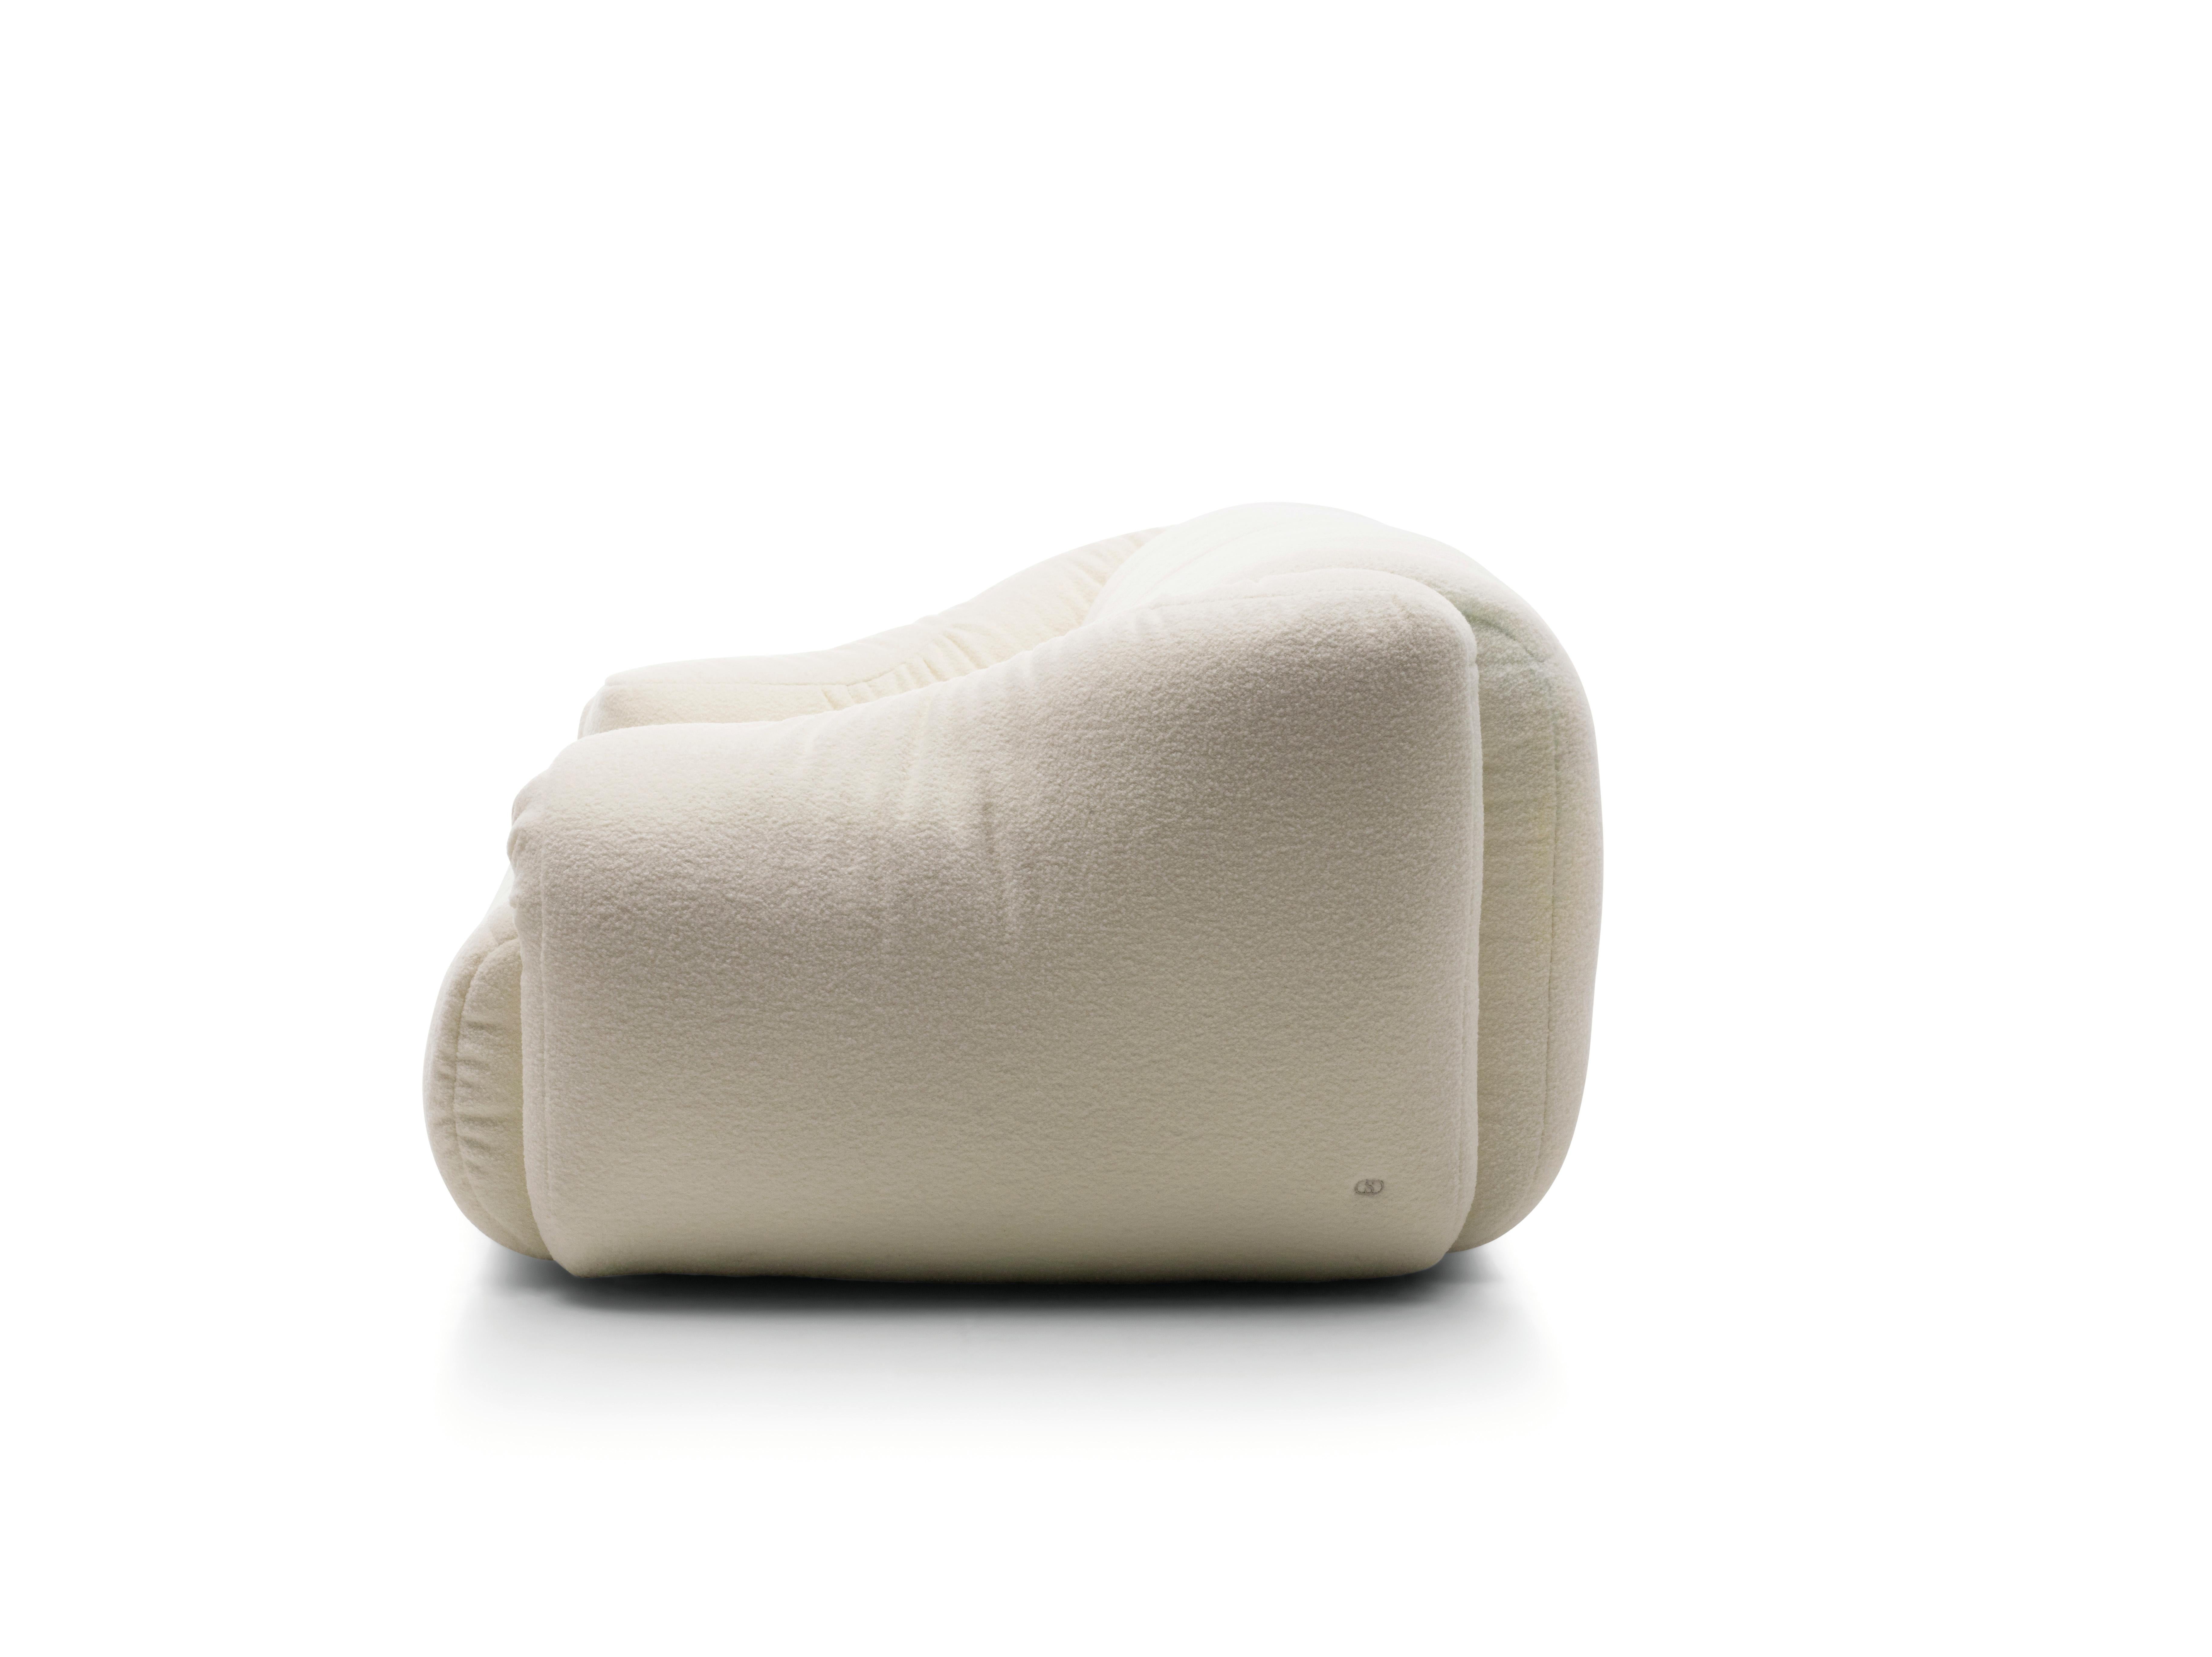 Confort d'assise infini 

Design et confort vont de pair de manière très séduisante dans le DS-705 de Philippe Malouin. La façon dont les accoudoirs sont repliés vers l'intérieur crée un design très audacieux. Ils créent des transitions fluides